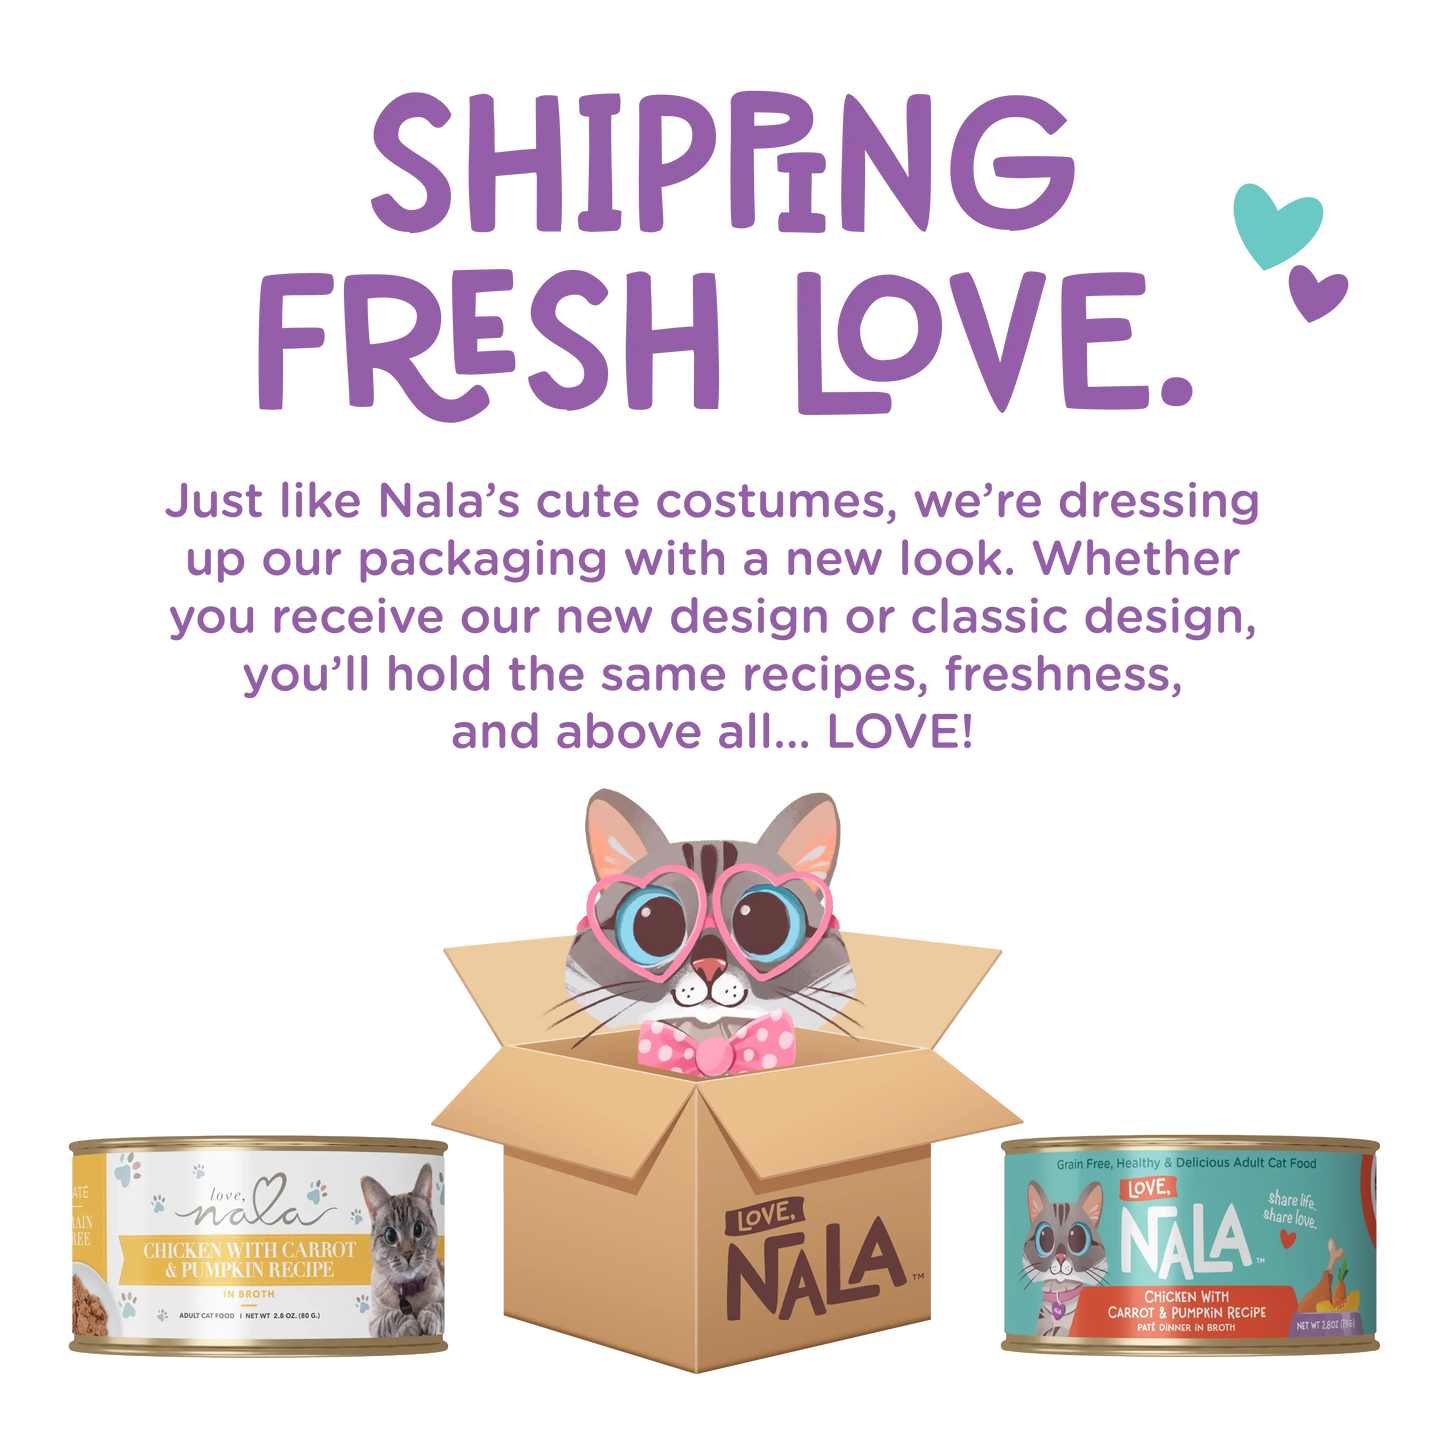 Love, Nala Flaked Tuna & Salmon Recipe in Broth Cat Food 2.8oz Love Nala